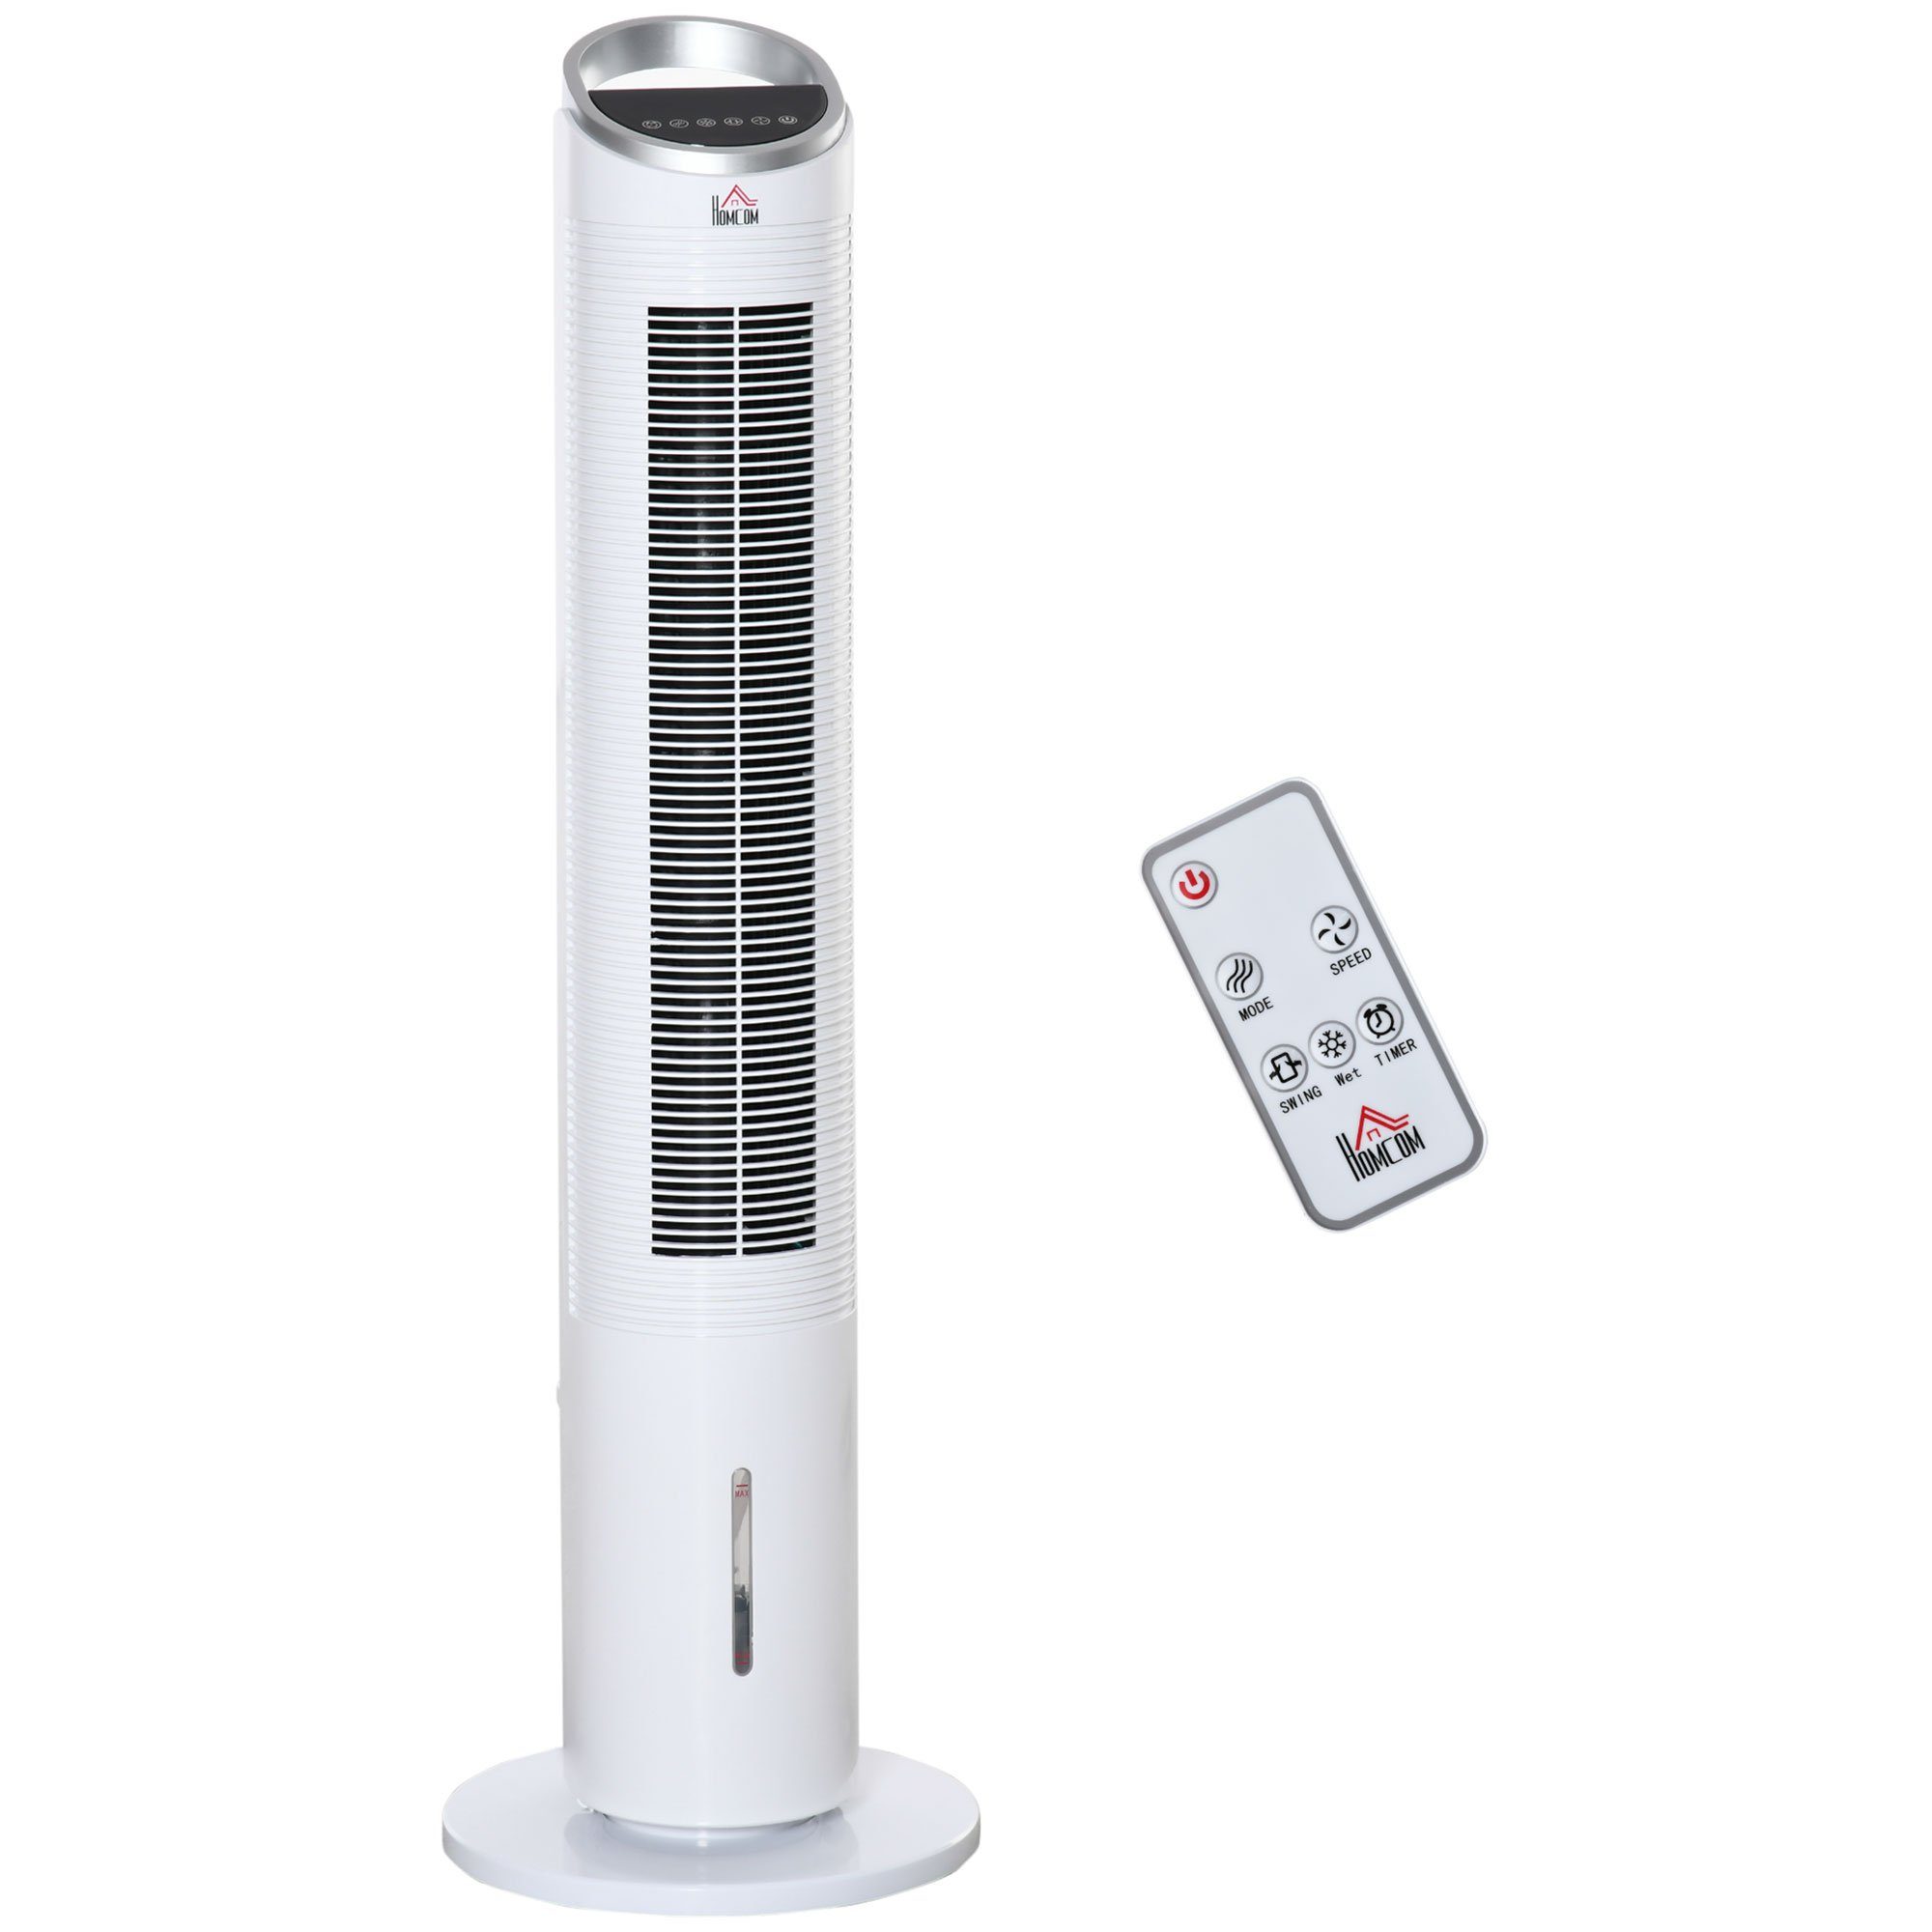 HOMCOM Standventilator Turmventilator mit Wasserkühlung und Fernbedienung 3 Modi Weiß, 60 W